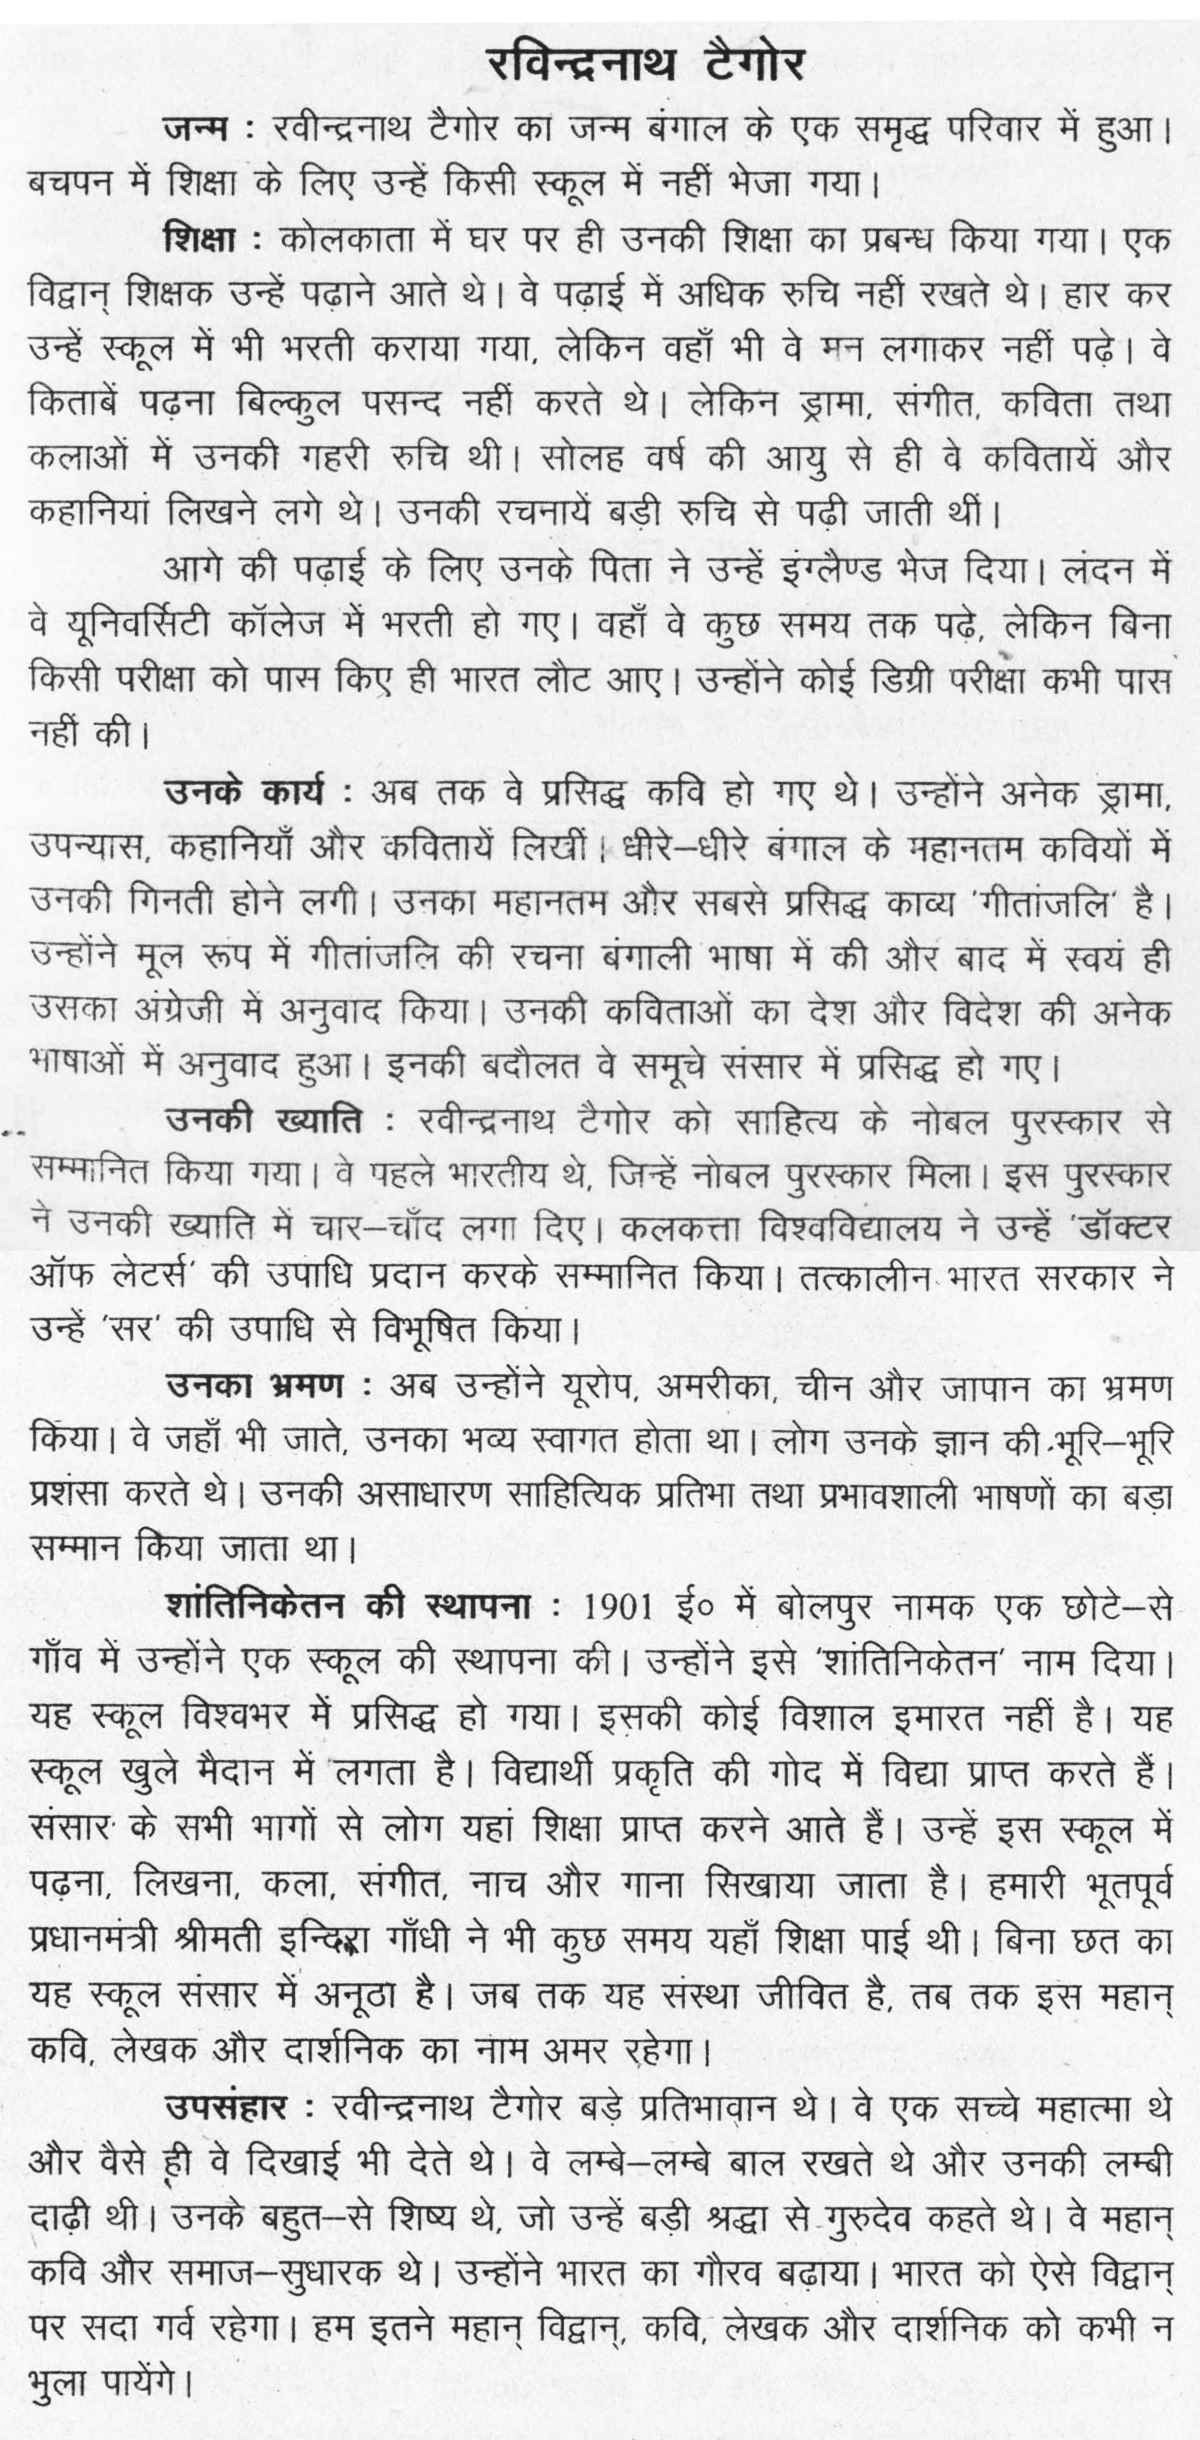 Short essay on taj mahal in hindi